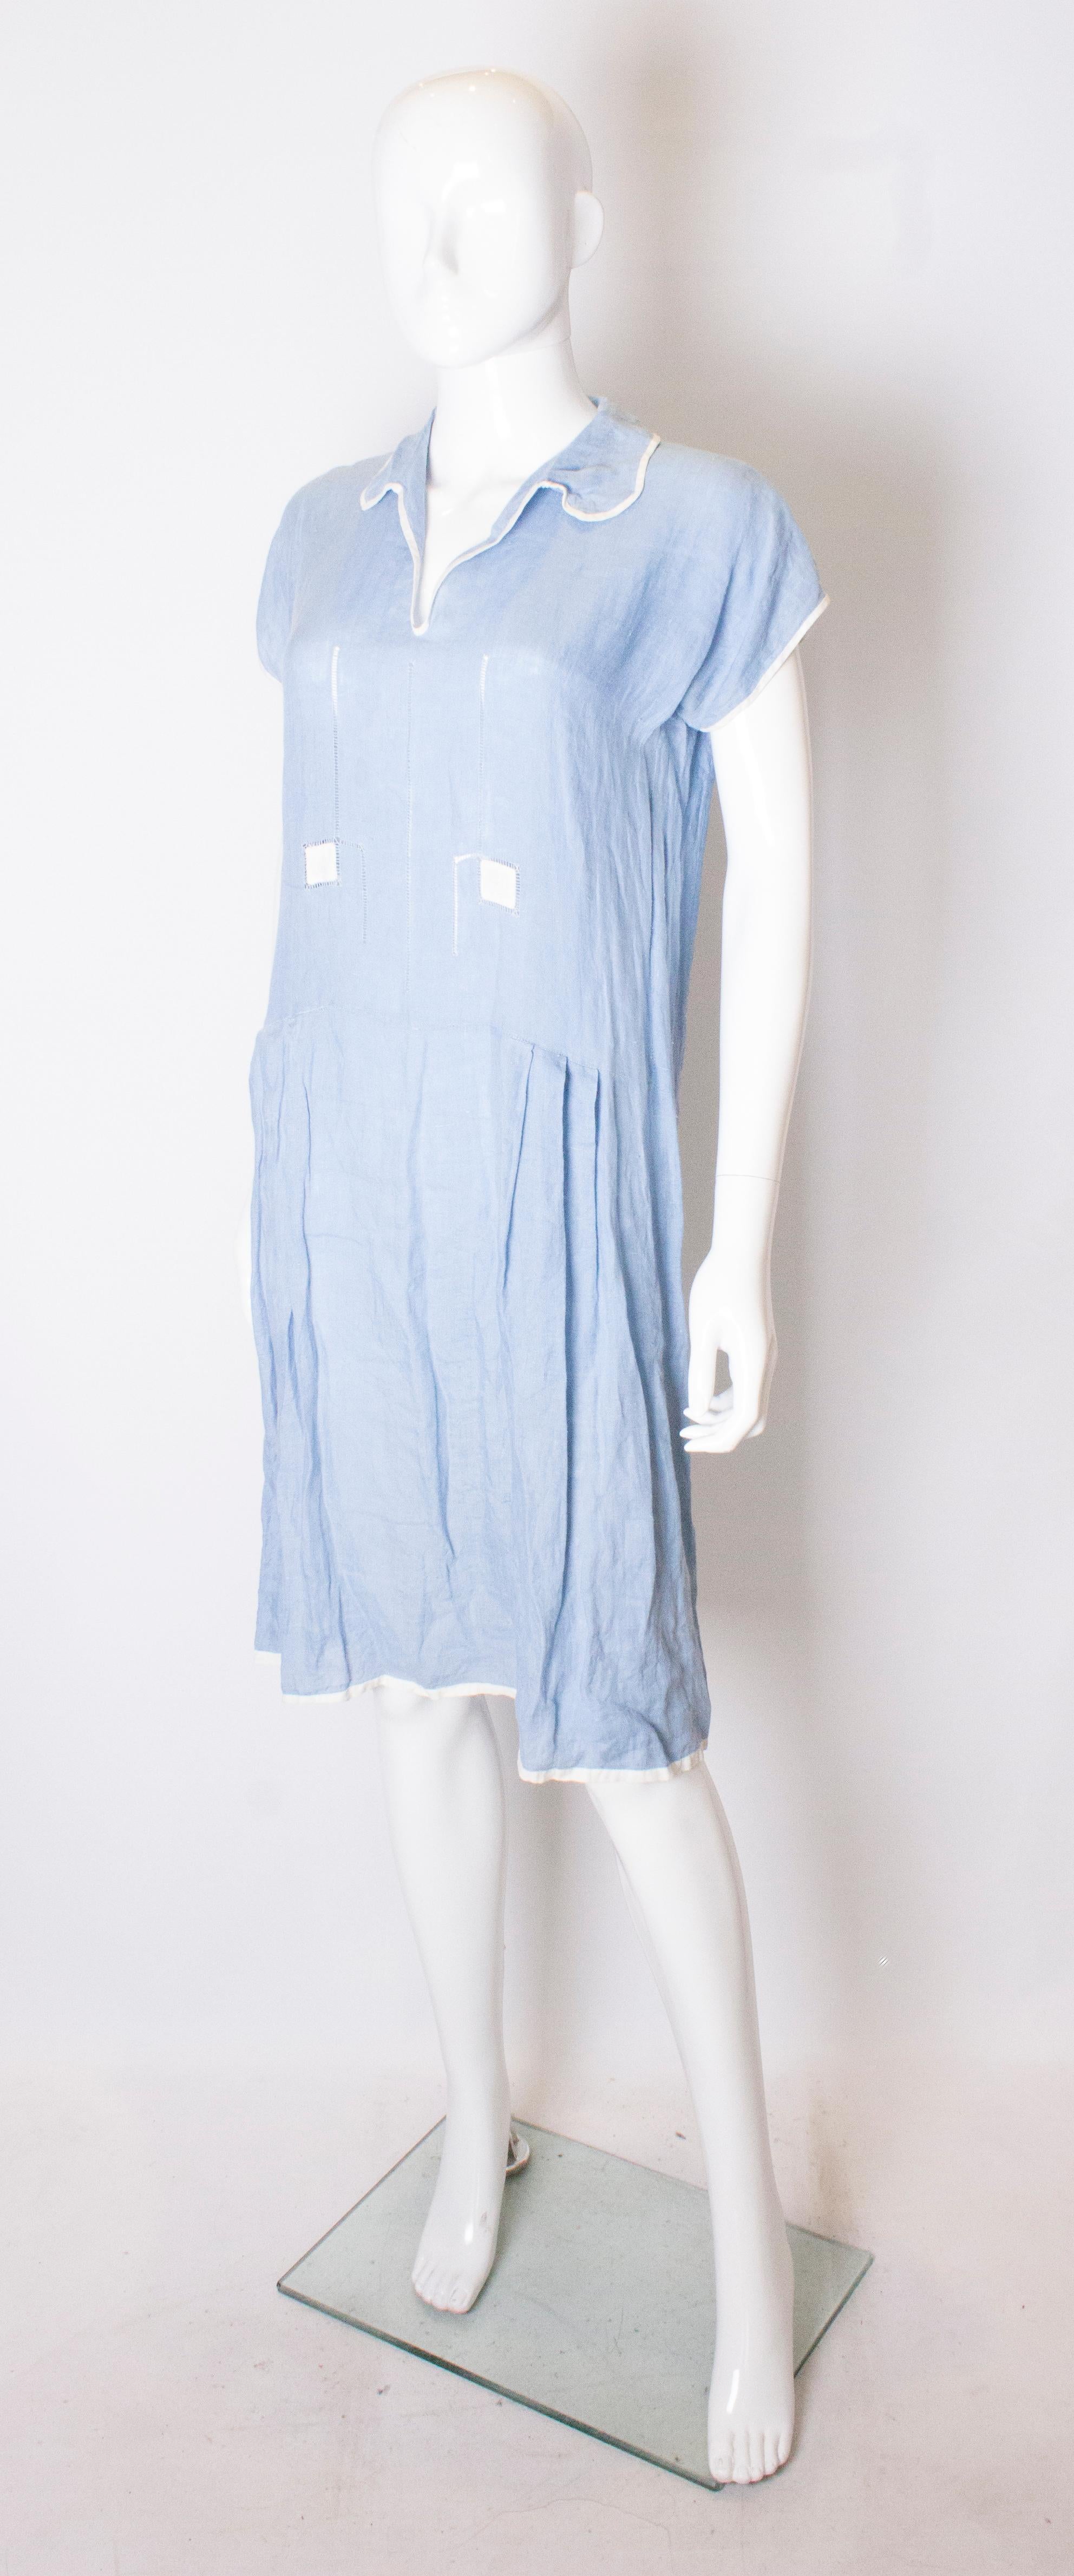 Ein hübsches Sommerkleid aus den 1920er Jahren. Das Kleid ist aus himmelblauem Leinen mit weißen Paspeln. Das Kleid hat einen V-Ausschnitt und eine Raffung im Hüftbereich.